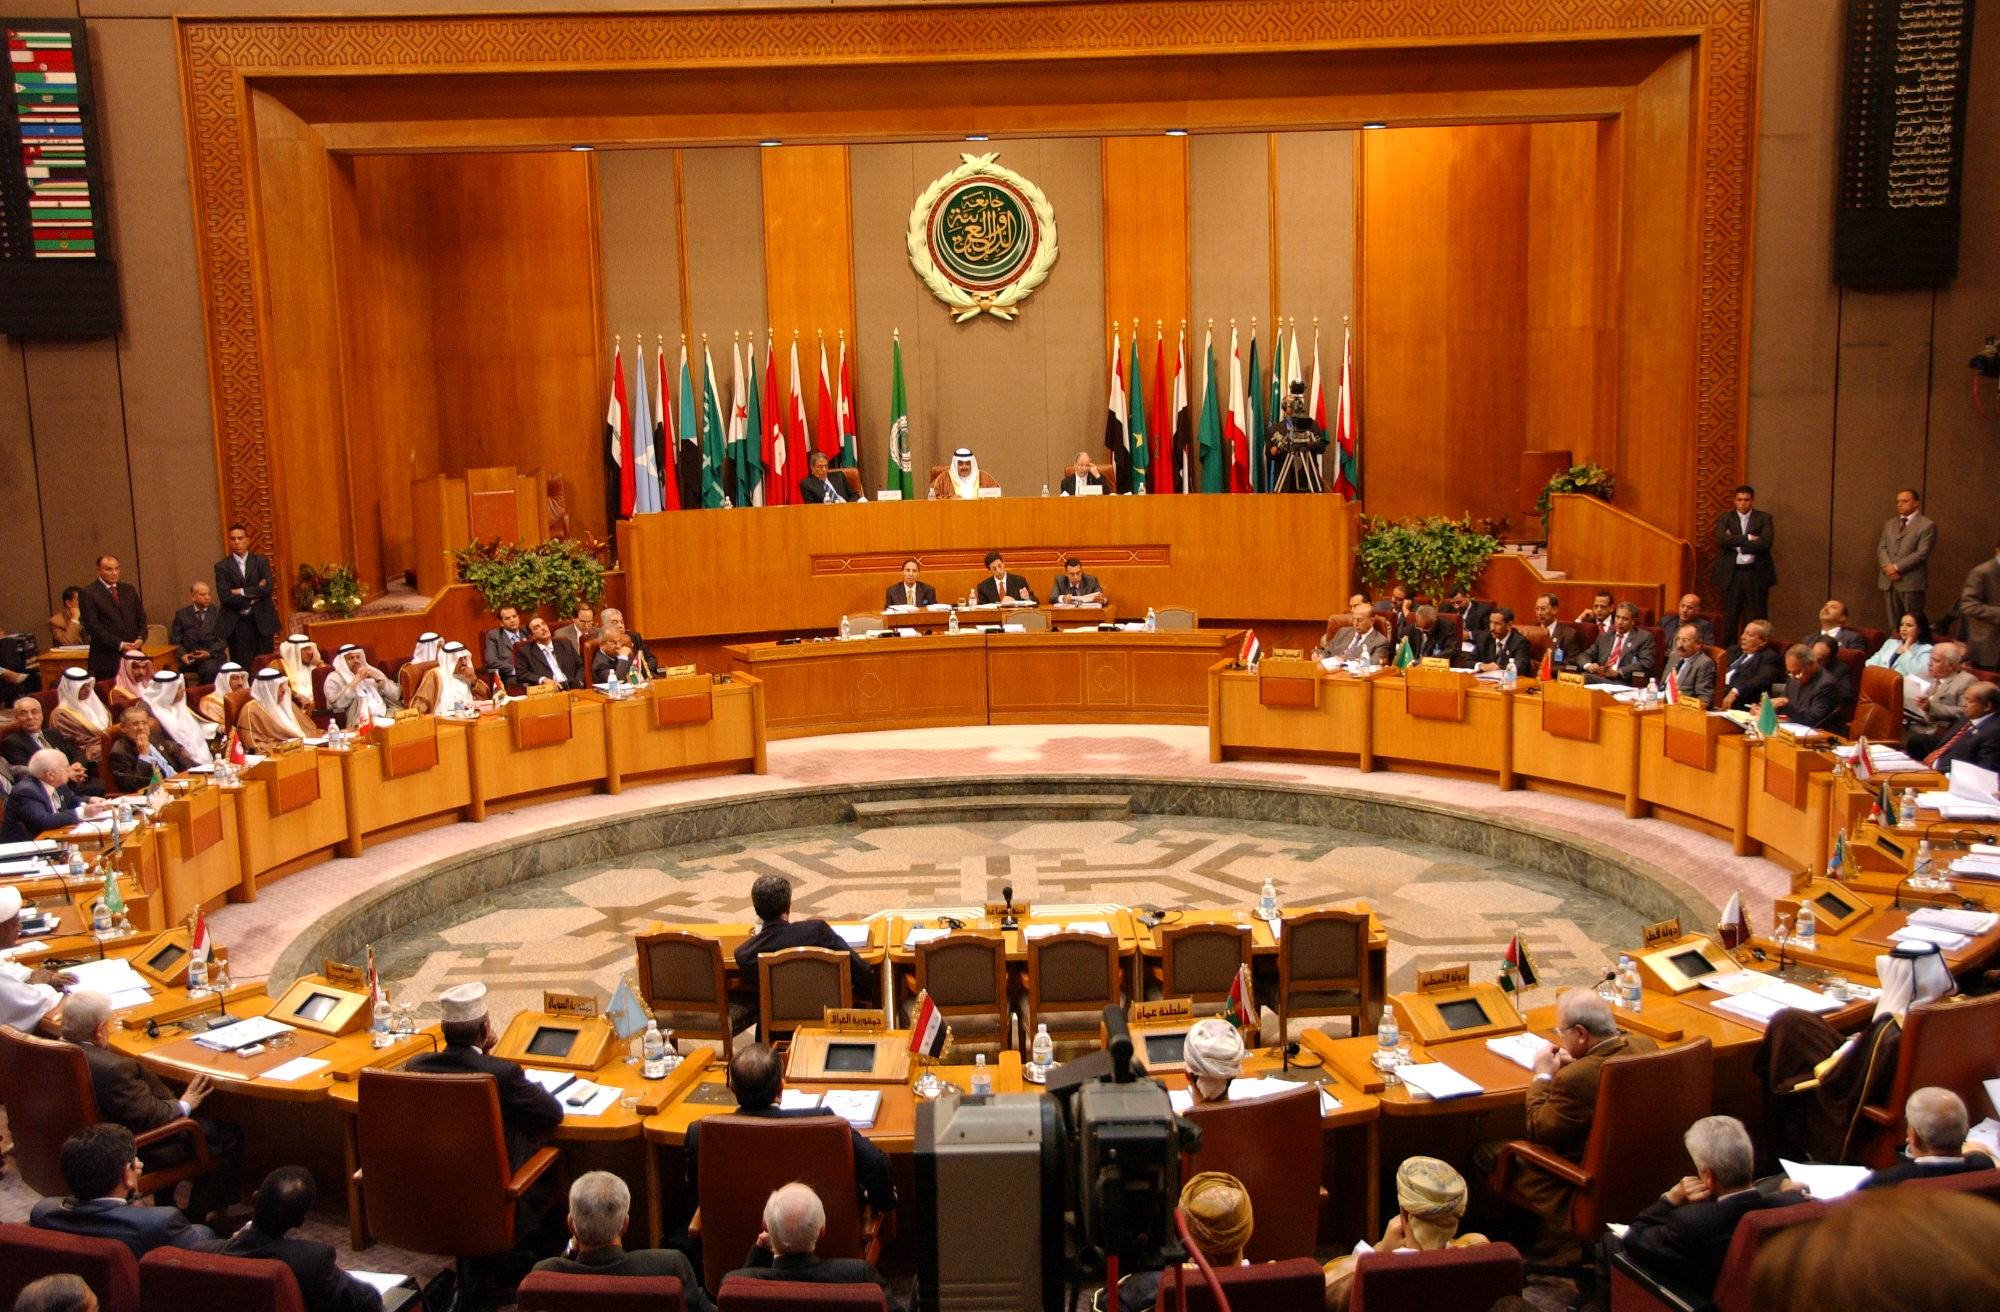 اجتماع عربي طارئ الأحد لبحث "الإرهاب الحوثي" ضد الإمارات